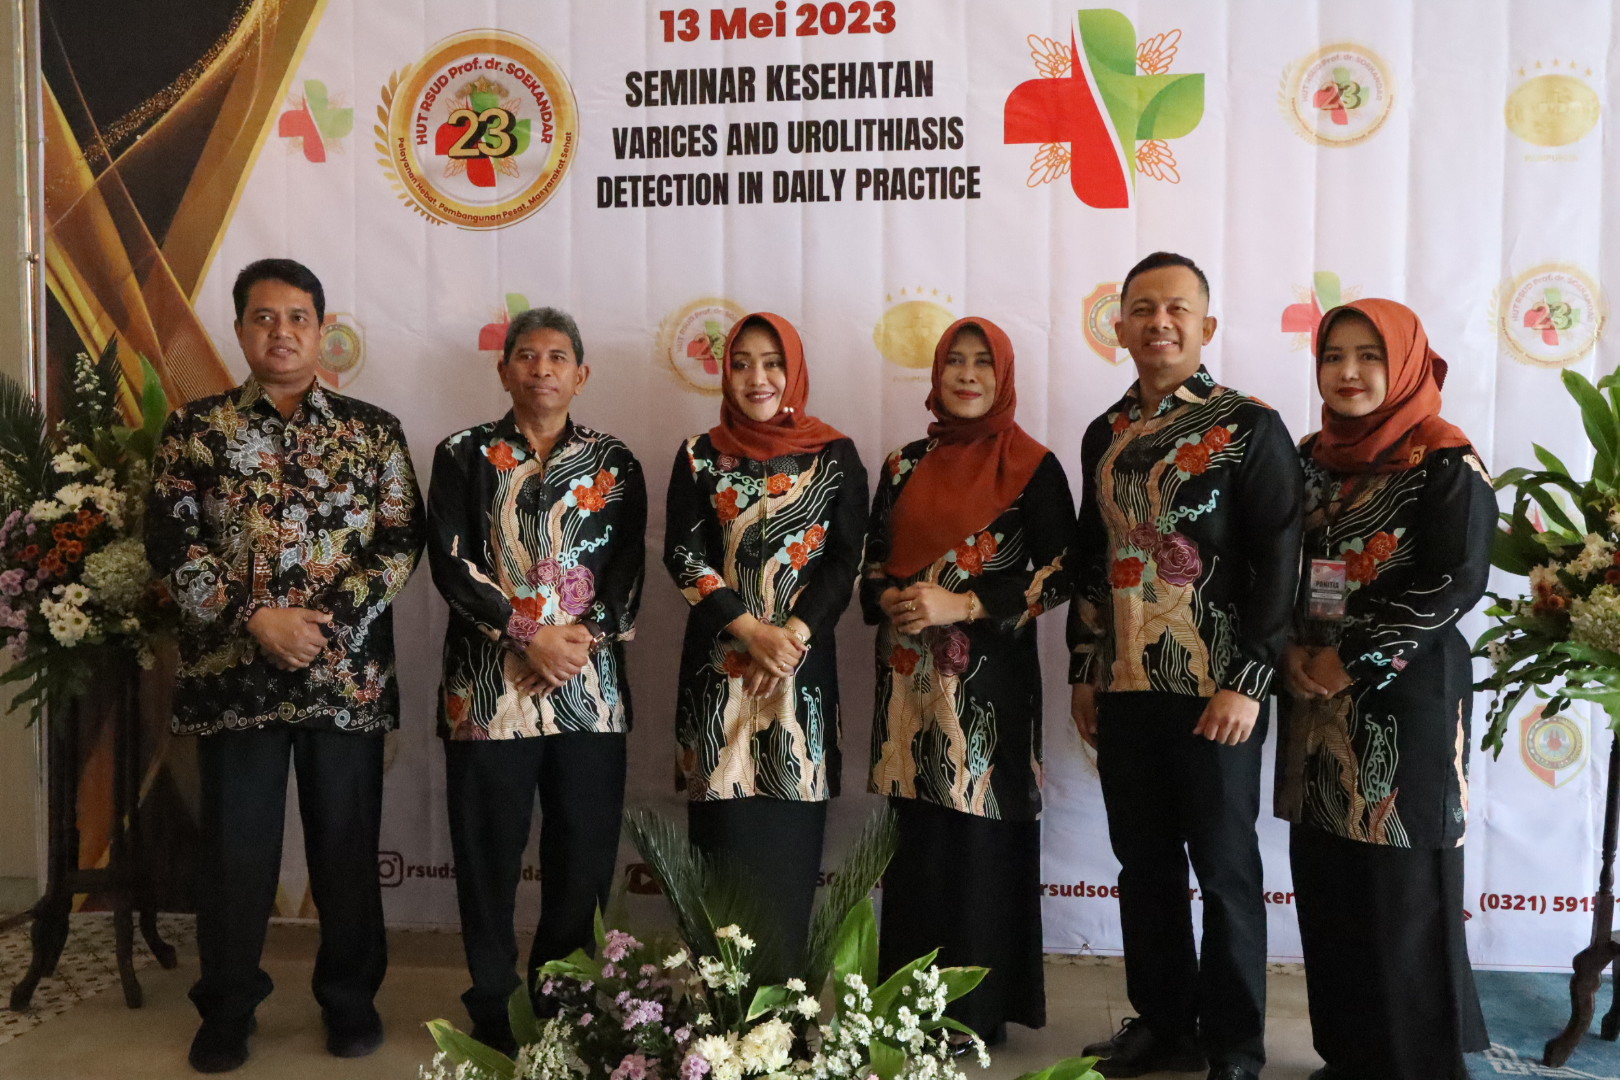 Hadiri Seminar Kesehatan RSUD Prof.dr. Soekandar, Bupati Ikfina Harap Pelayanan Kesehatan Di Bumi Majapahit Terus Meningkat